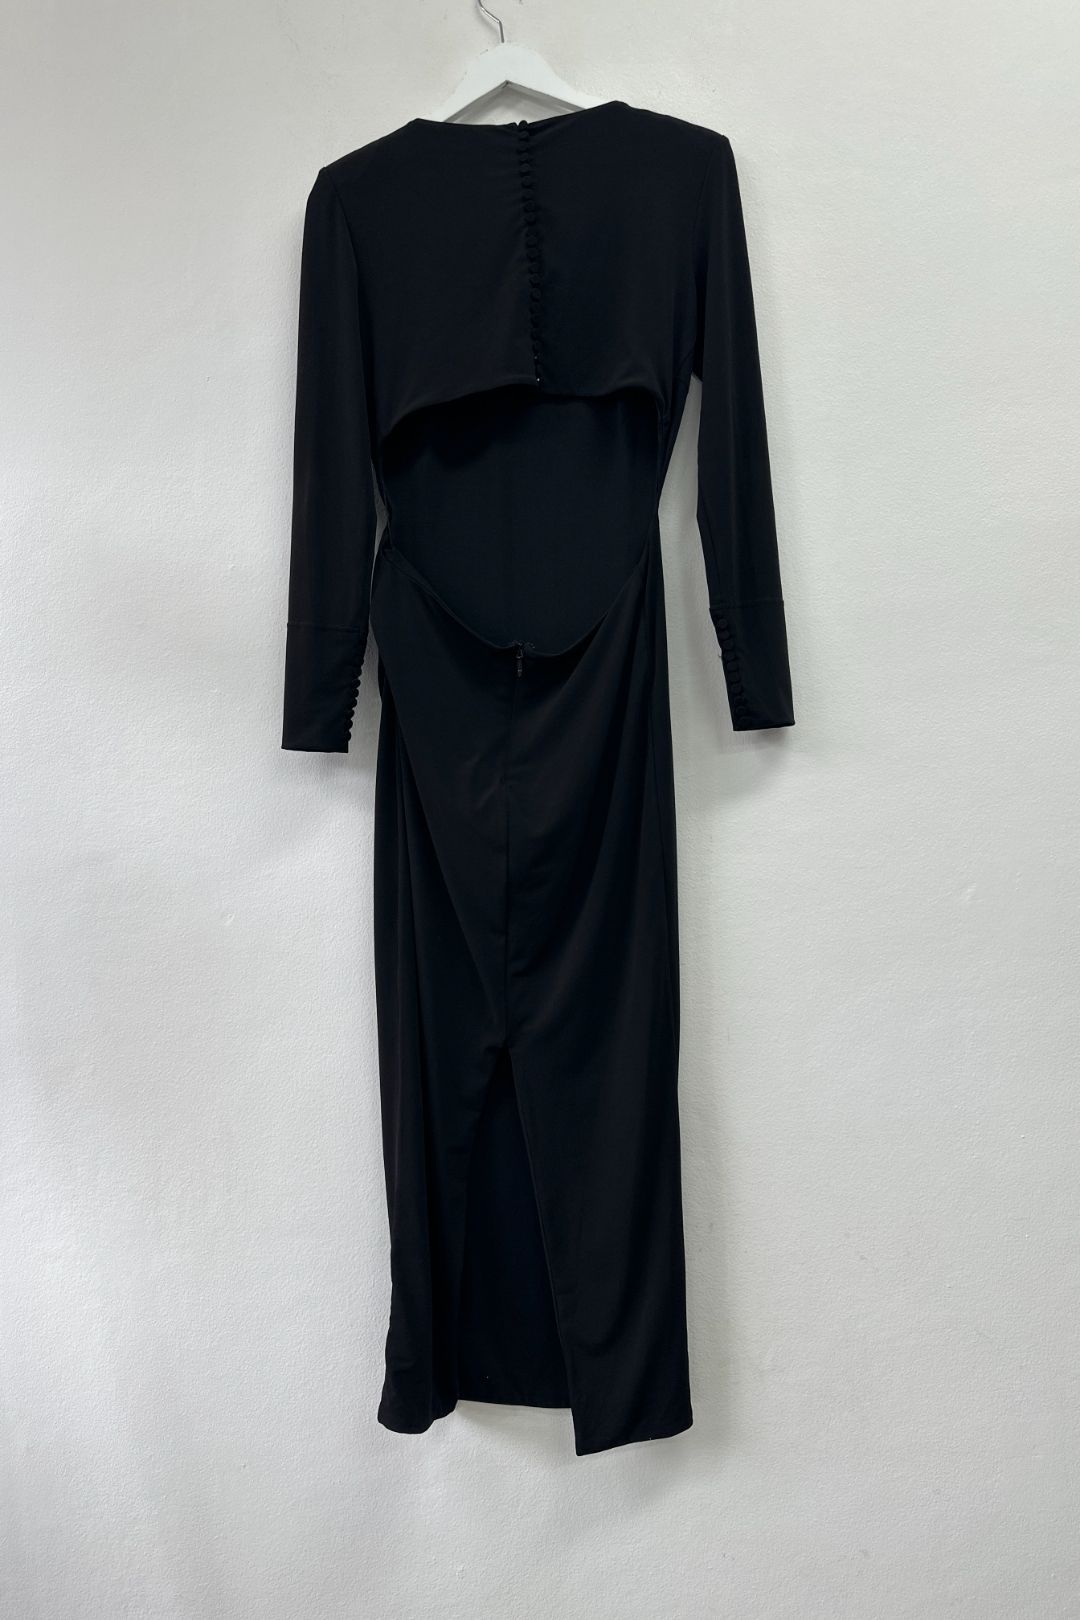 Mossman The Hudson Midi Dress in Black